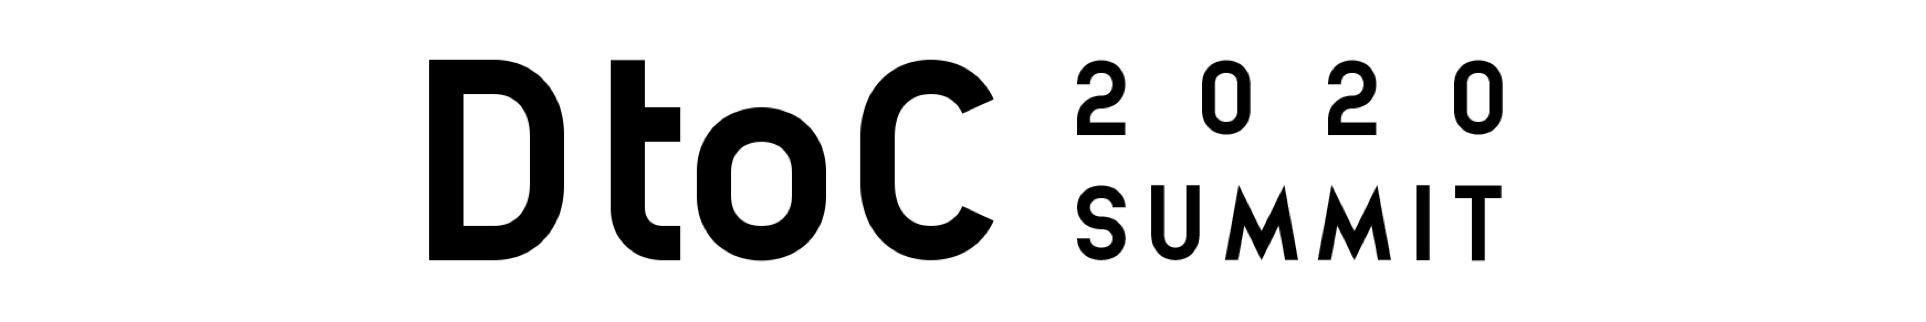 DtoC Summit 2020ロゴ